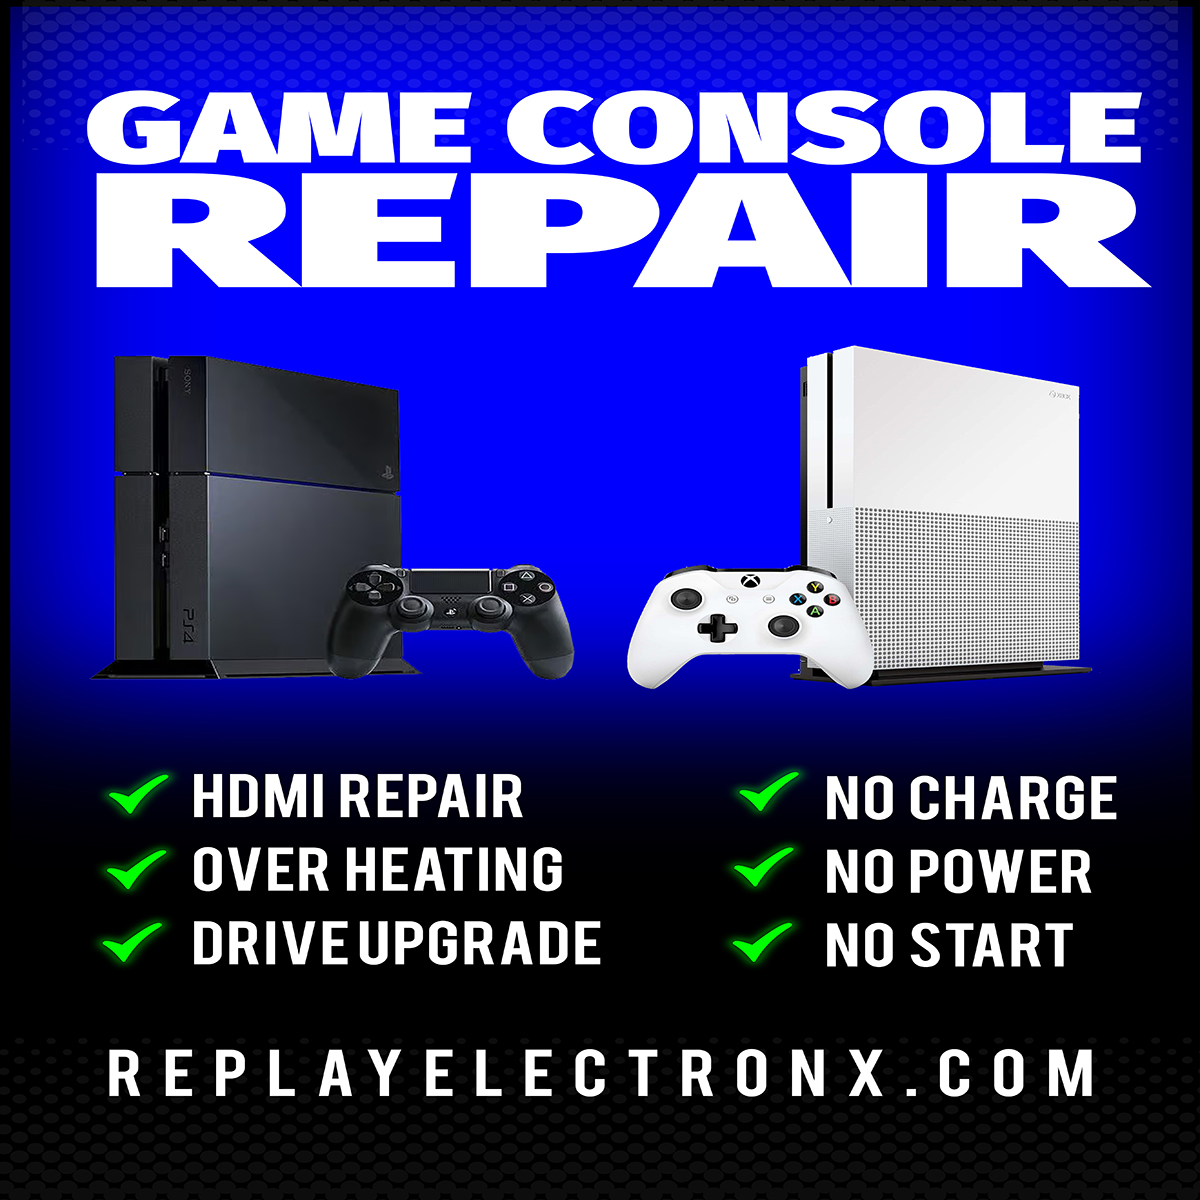 PlayStation 4 Repair

